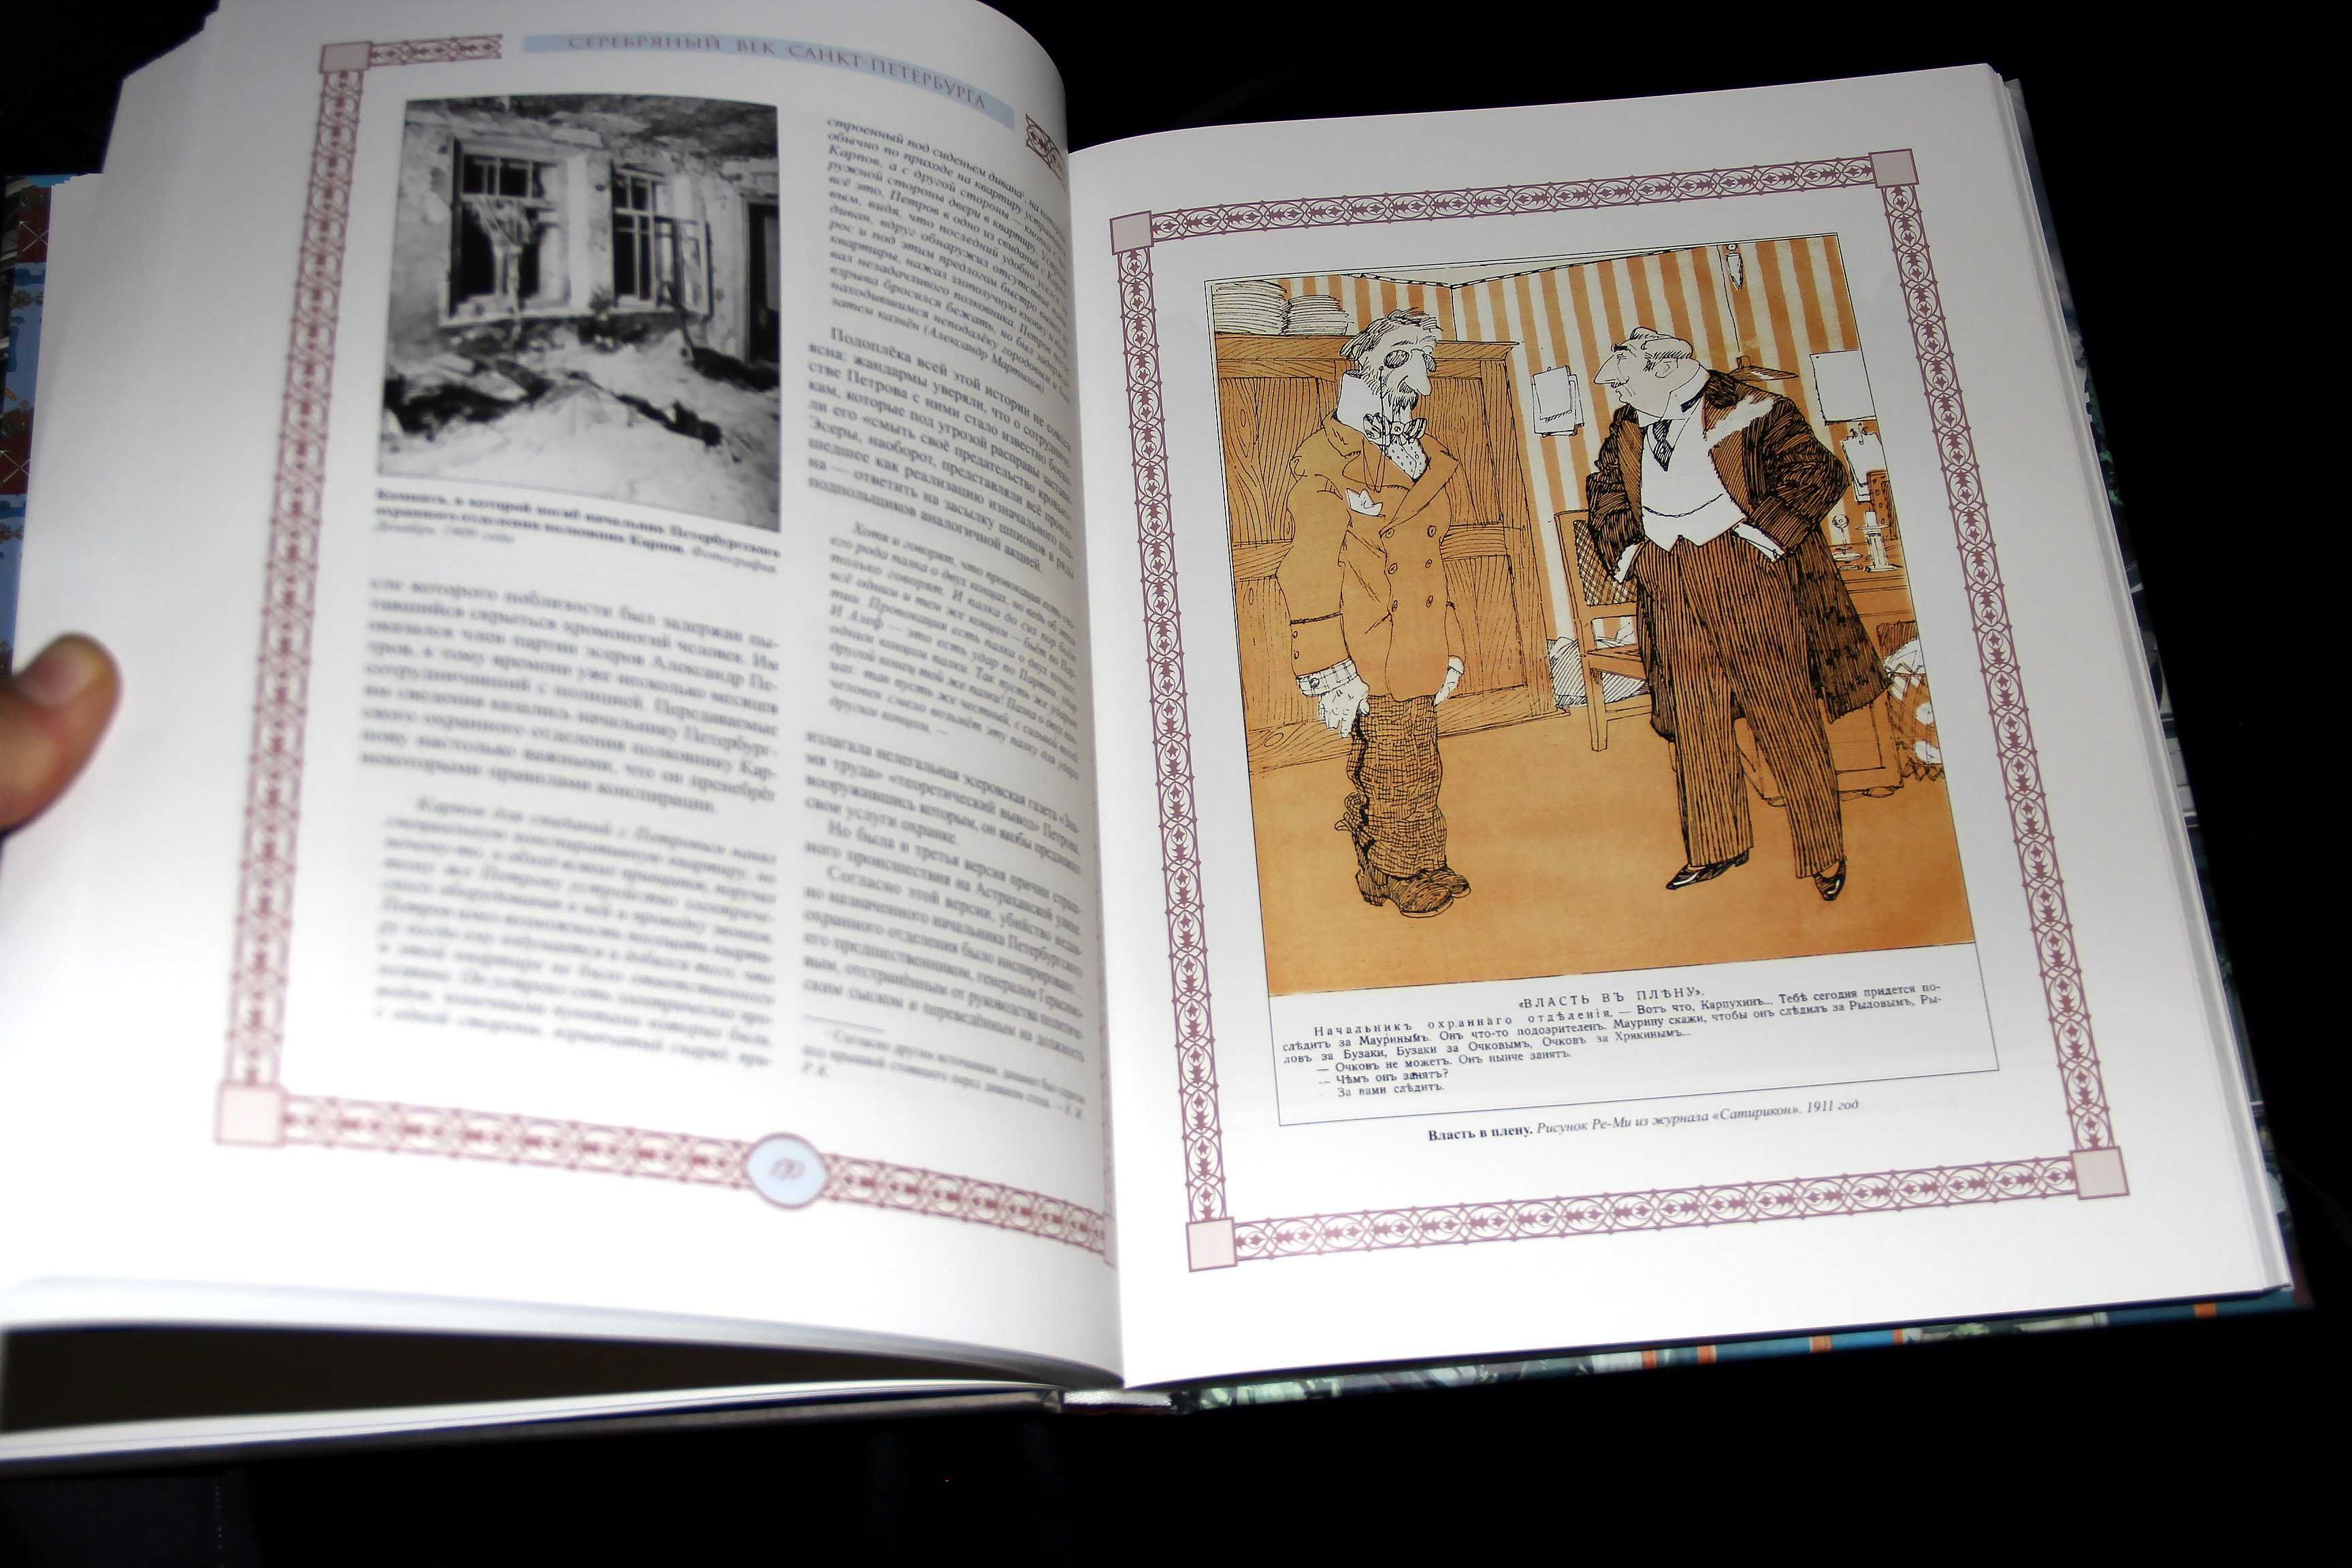 Серебряный век Санкт-Петербурга, ISBN: 978-5-373-05372-3 Олма-МГ, 2013